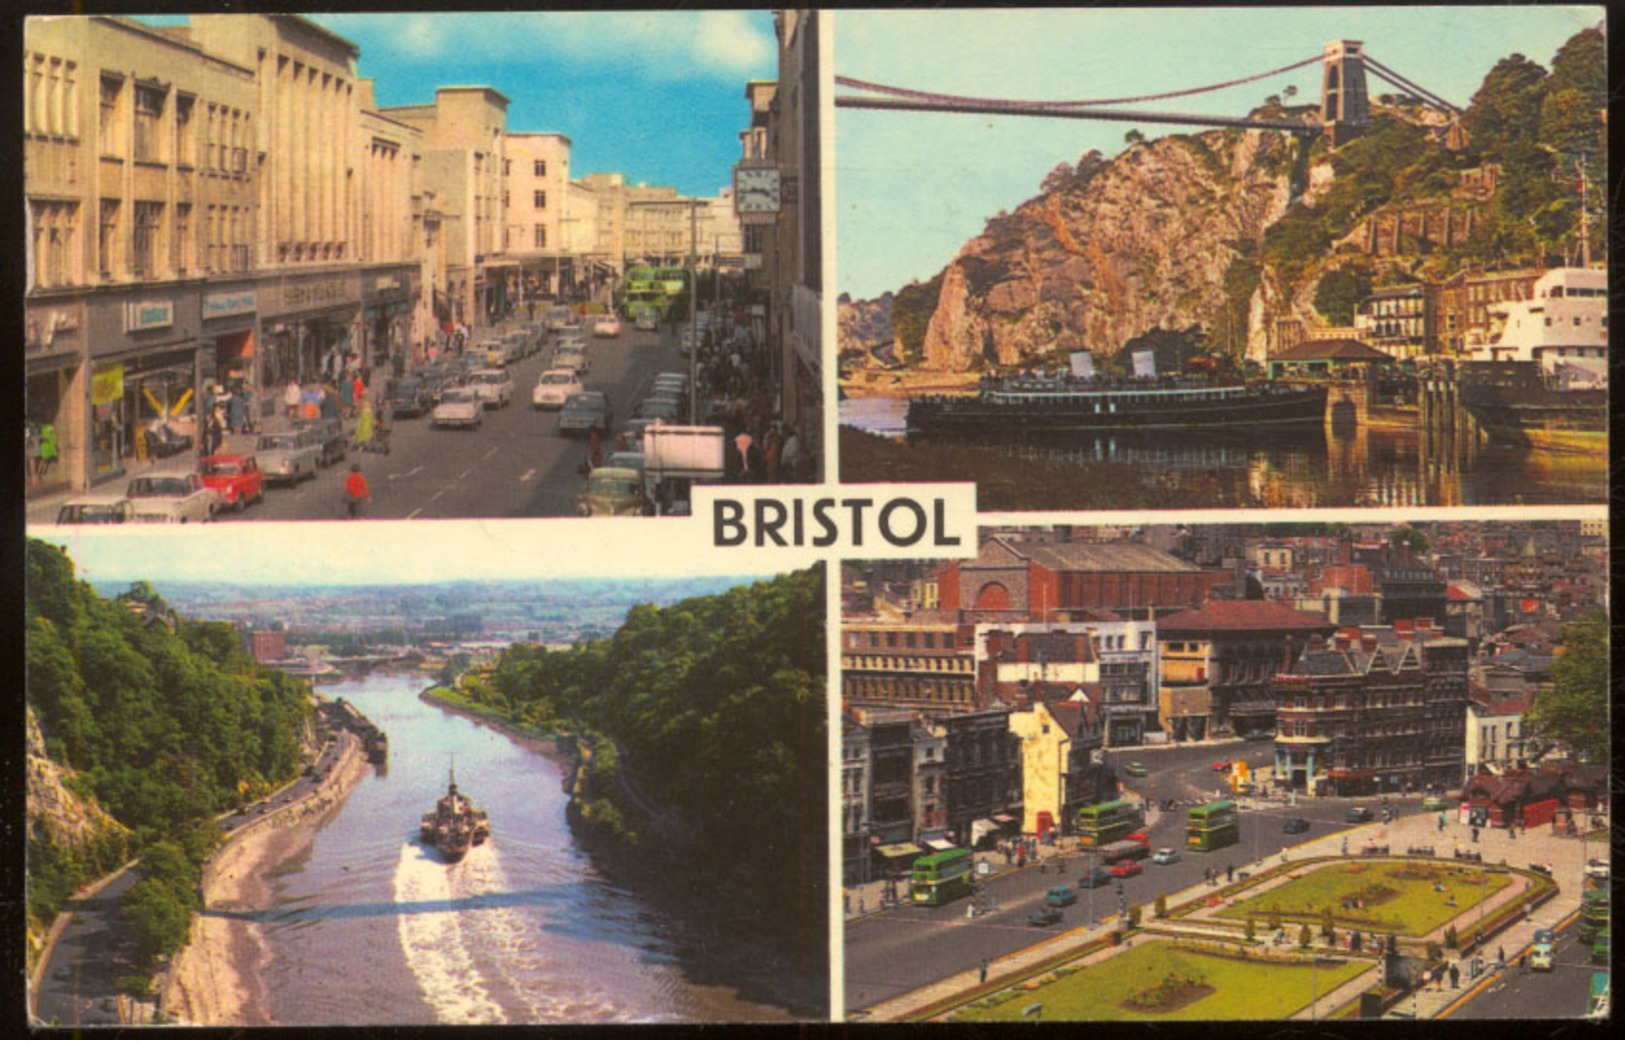 BRISTOL.- Broadmead - The River Svon - Clifton Suspension Bridge - City Center - Bristol